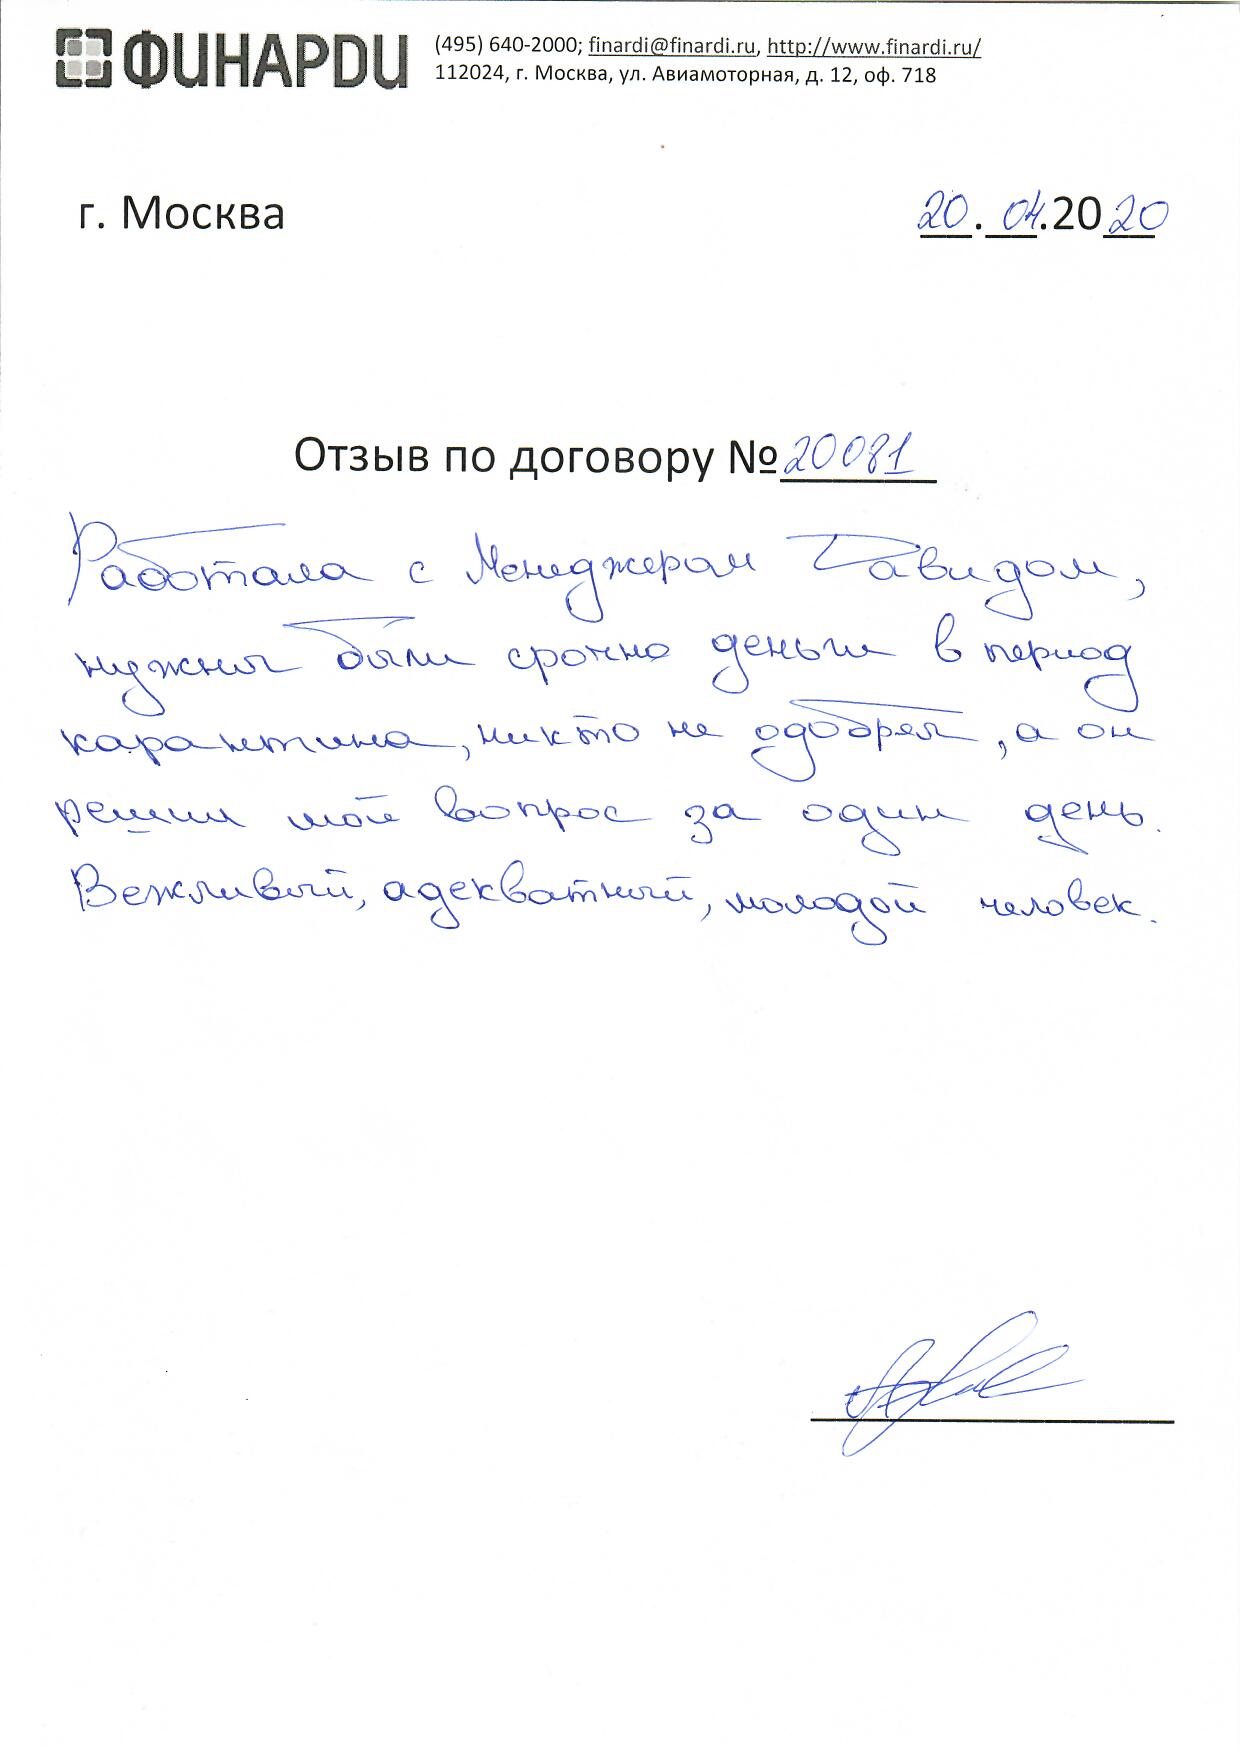 Отзыв по договору 20081